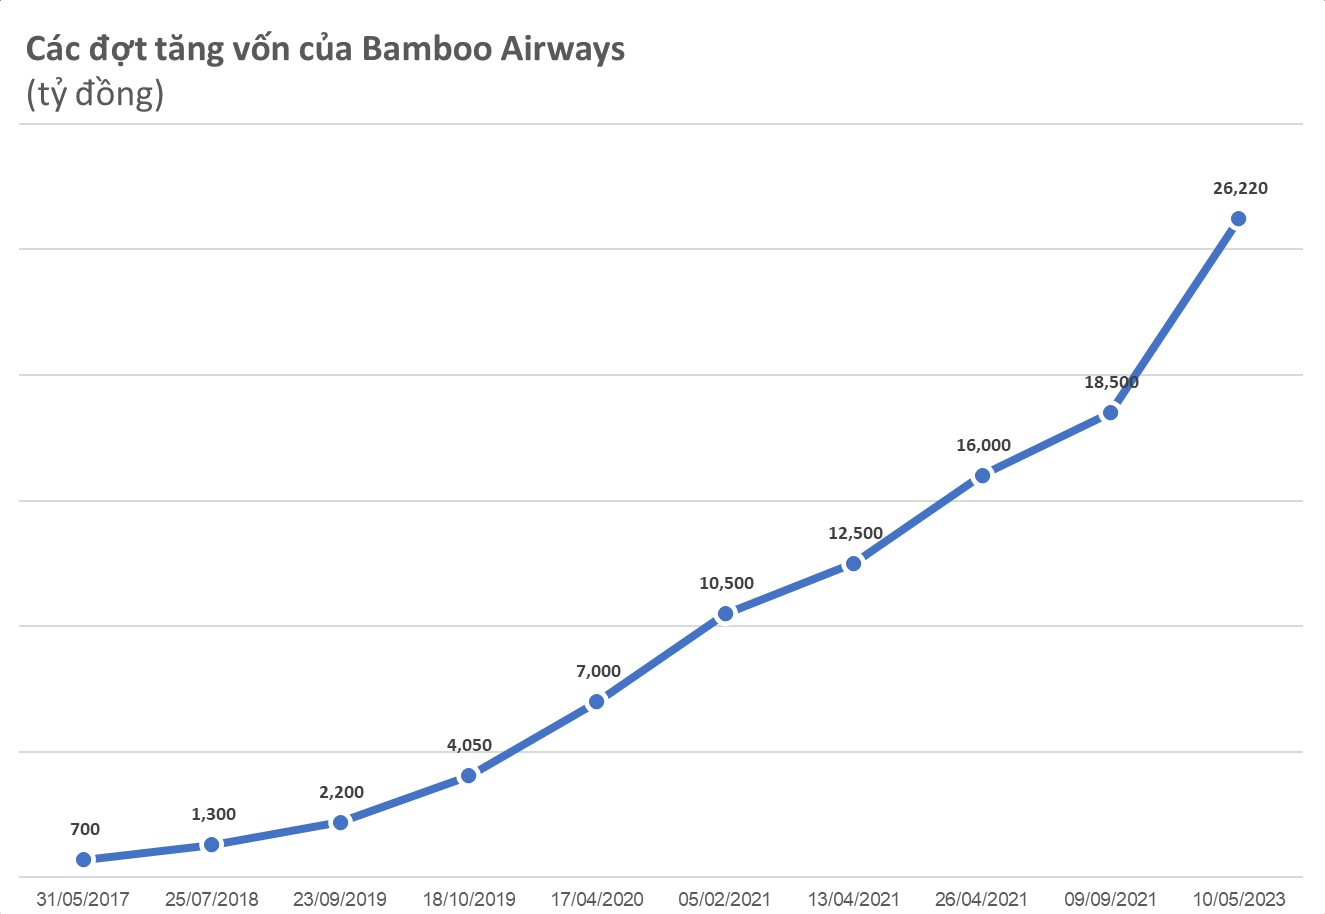 Bamboo Airways đã hoán đổi 7.720 tỷ nợ thành cổ phần, trở thành hãng bay có vốn điều lệ lớn nhất Việt Nam, cổ phiếu được định giá 3.000 đồng - Ảnh 1.